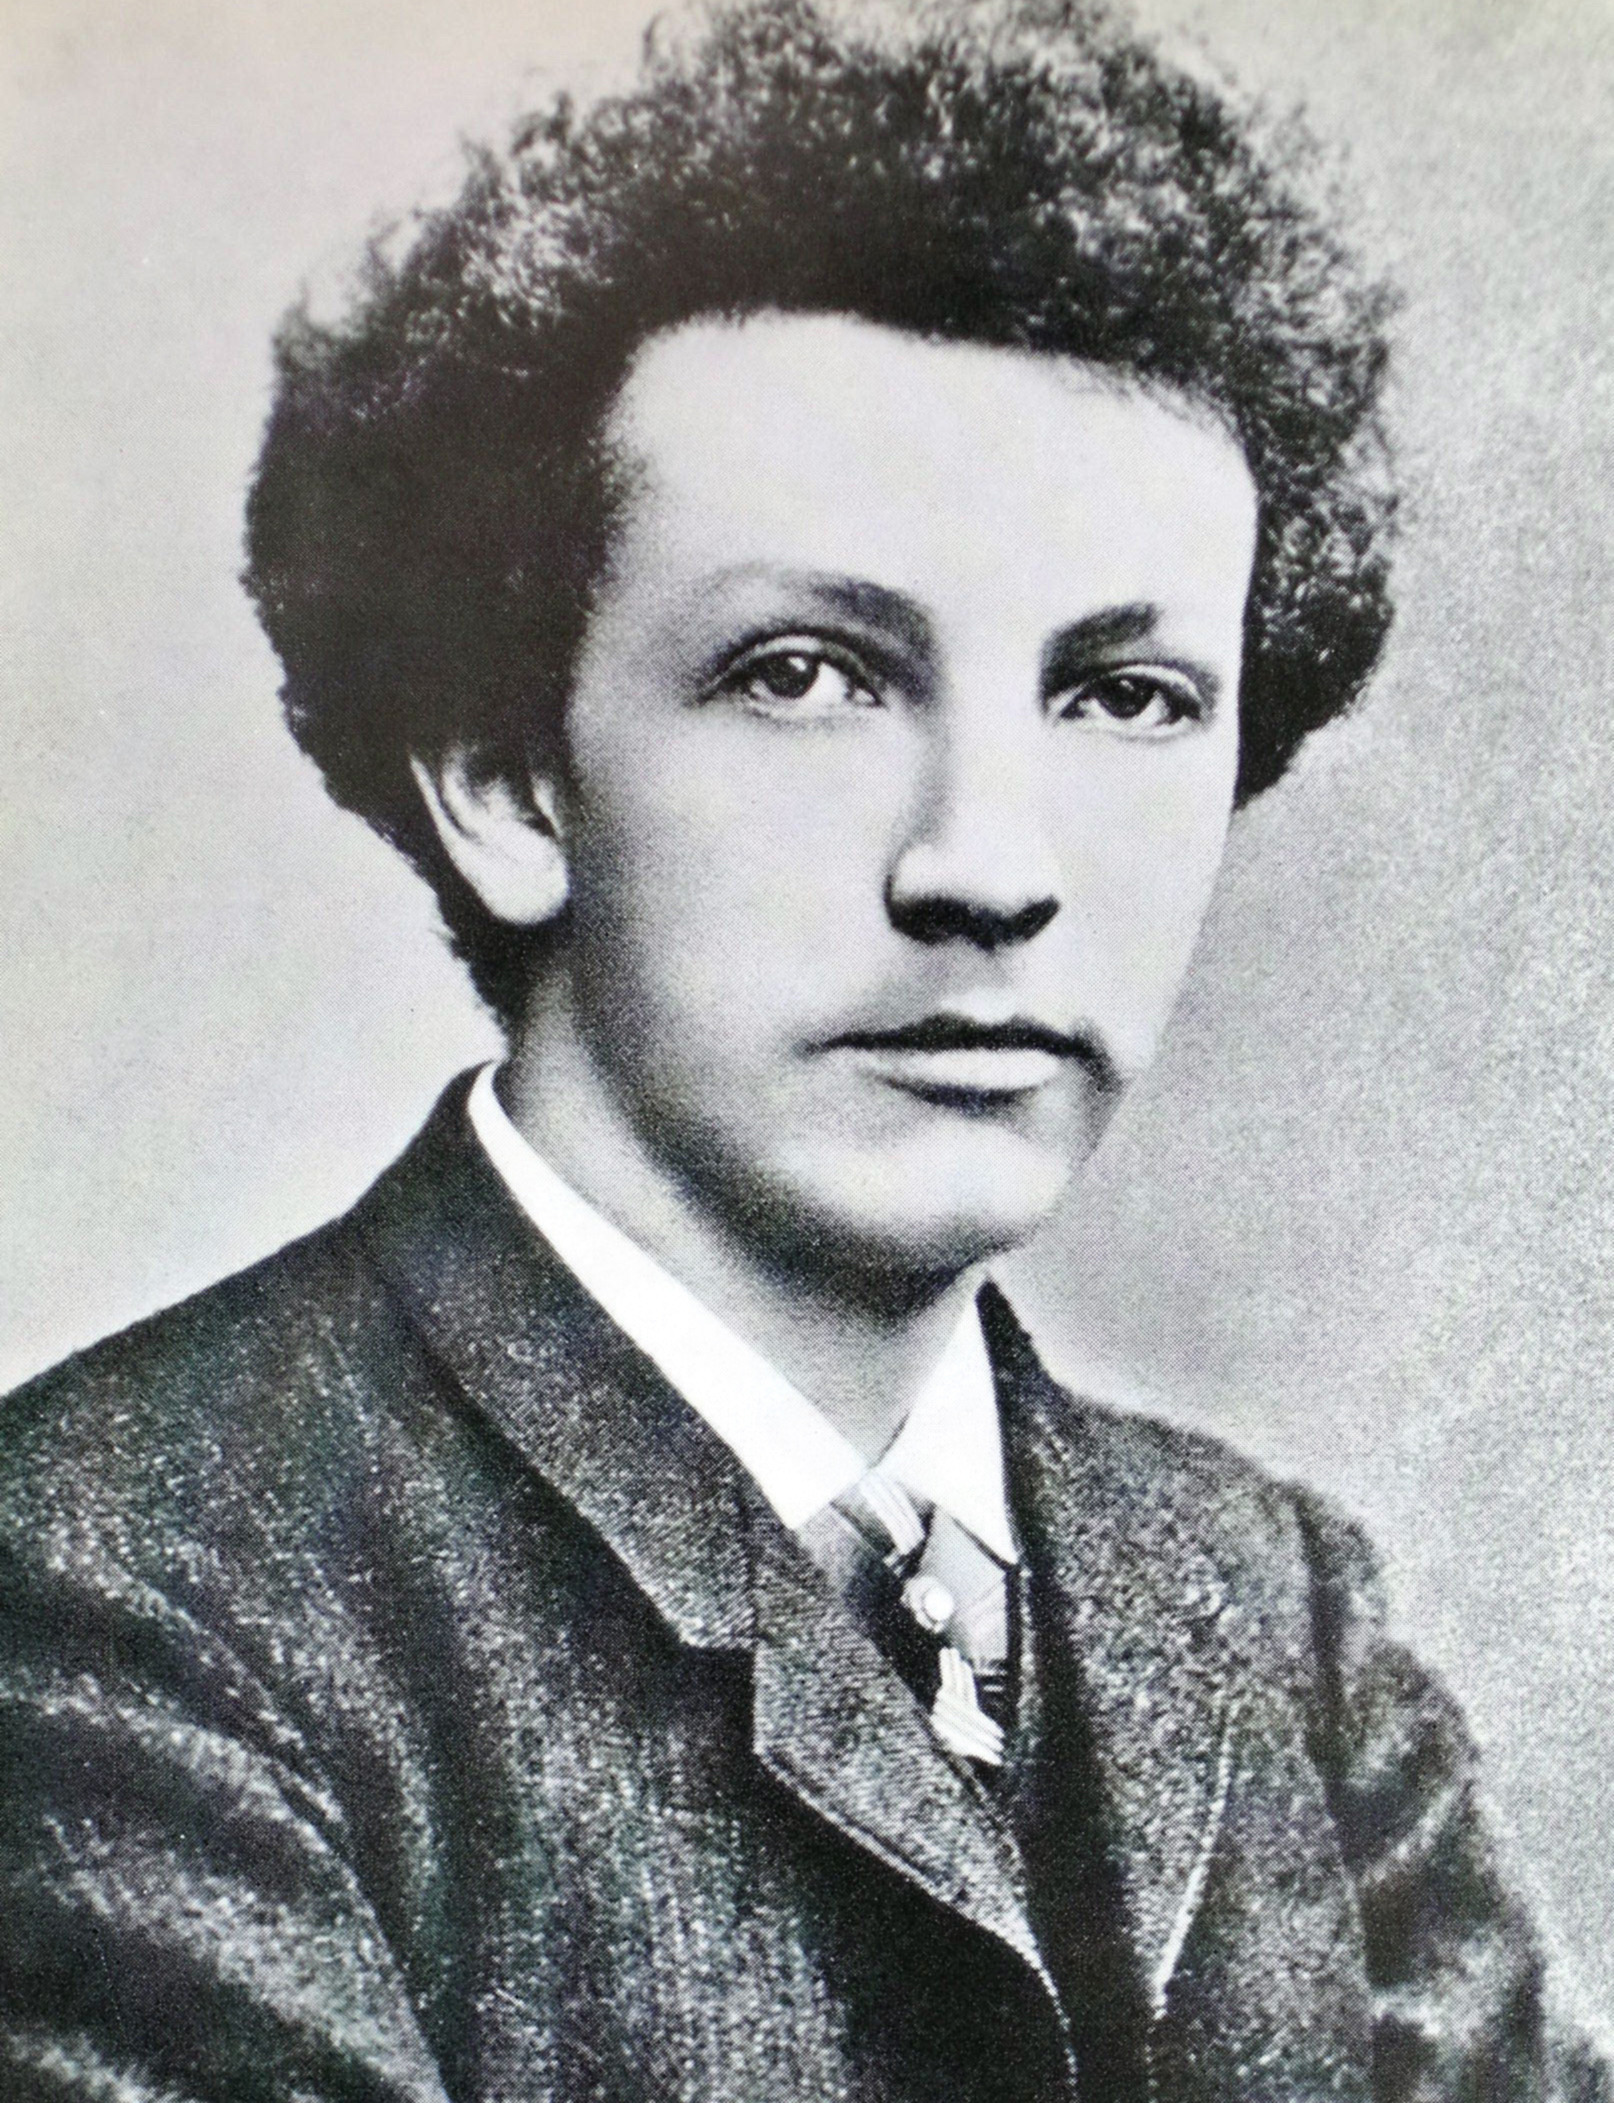 Le jeune Richard STRAUSS en 1888, cliquer pour une vue agrandie